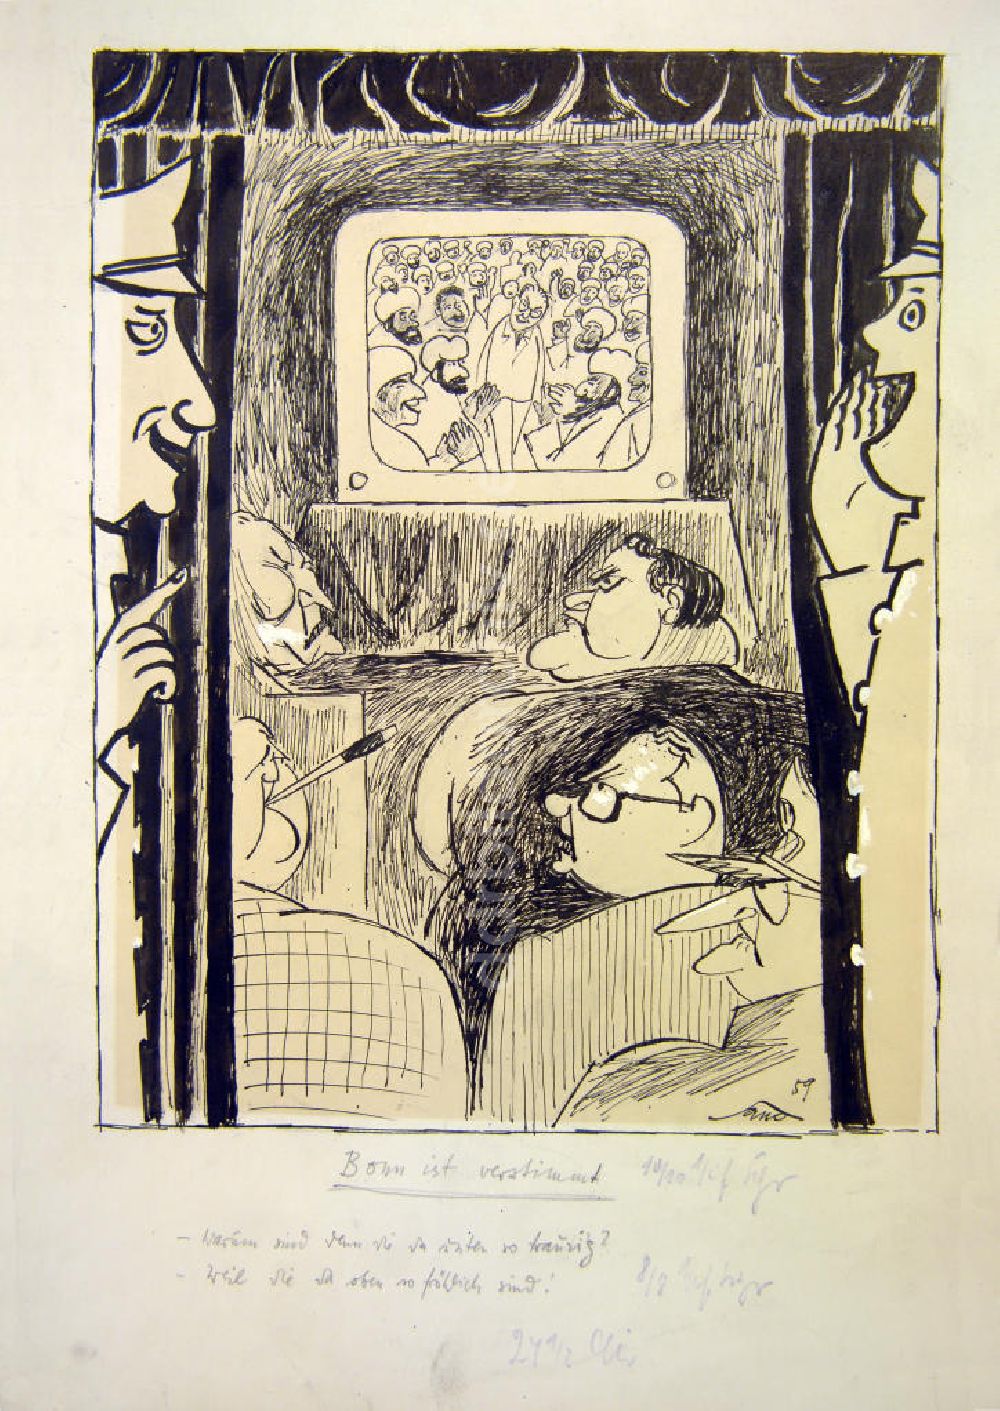 Berlin: Zeichnung von Herbert Sandberg Bonn ist verstimmt aus dem Jahr 1959